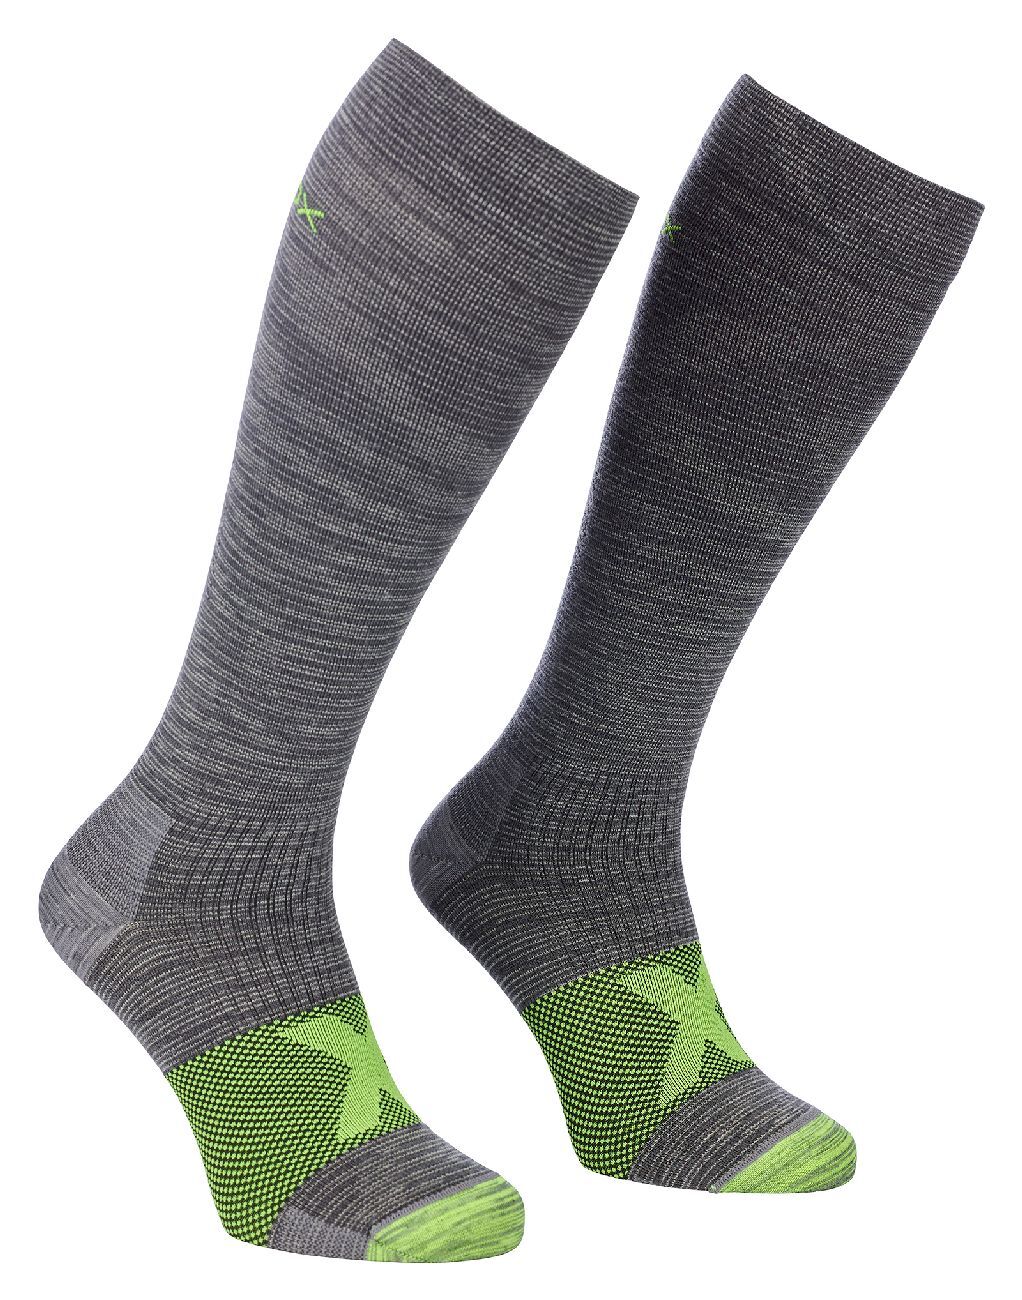 Ortovox Tour Compression Long Socks - Skisokken - Heren